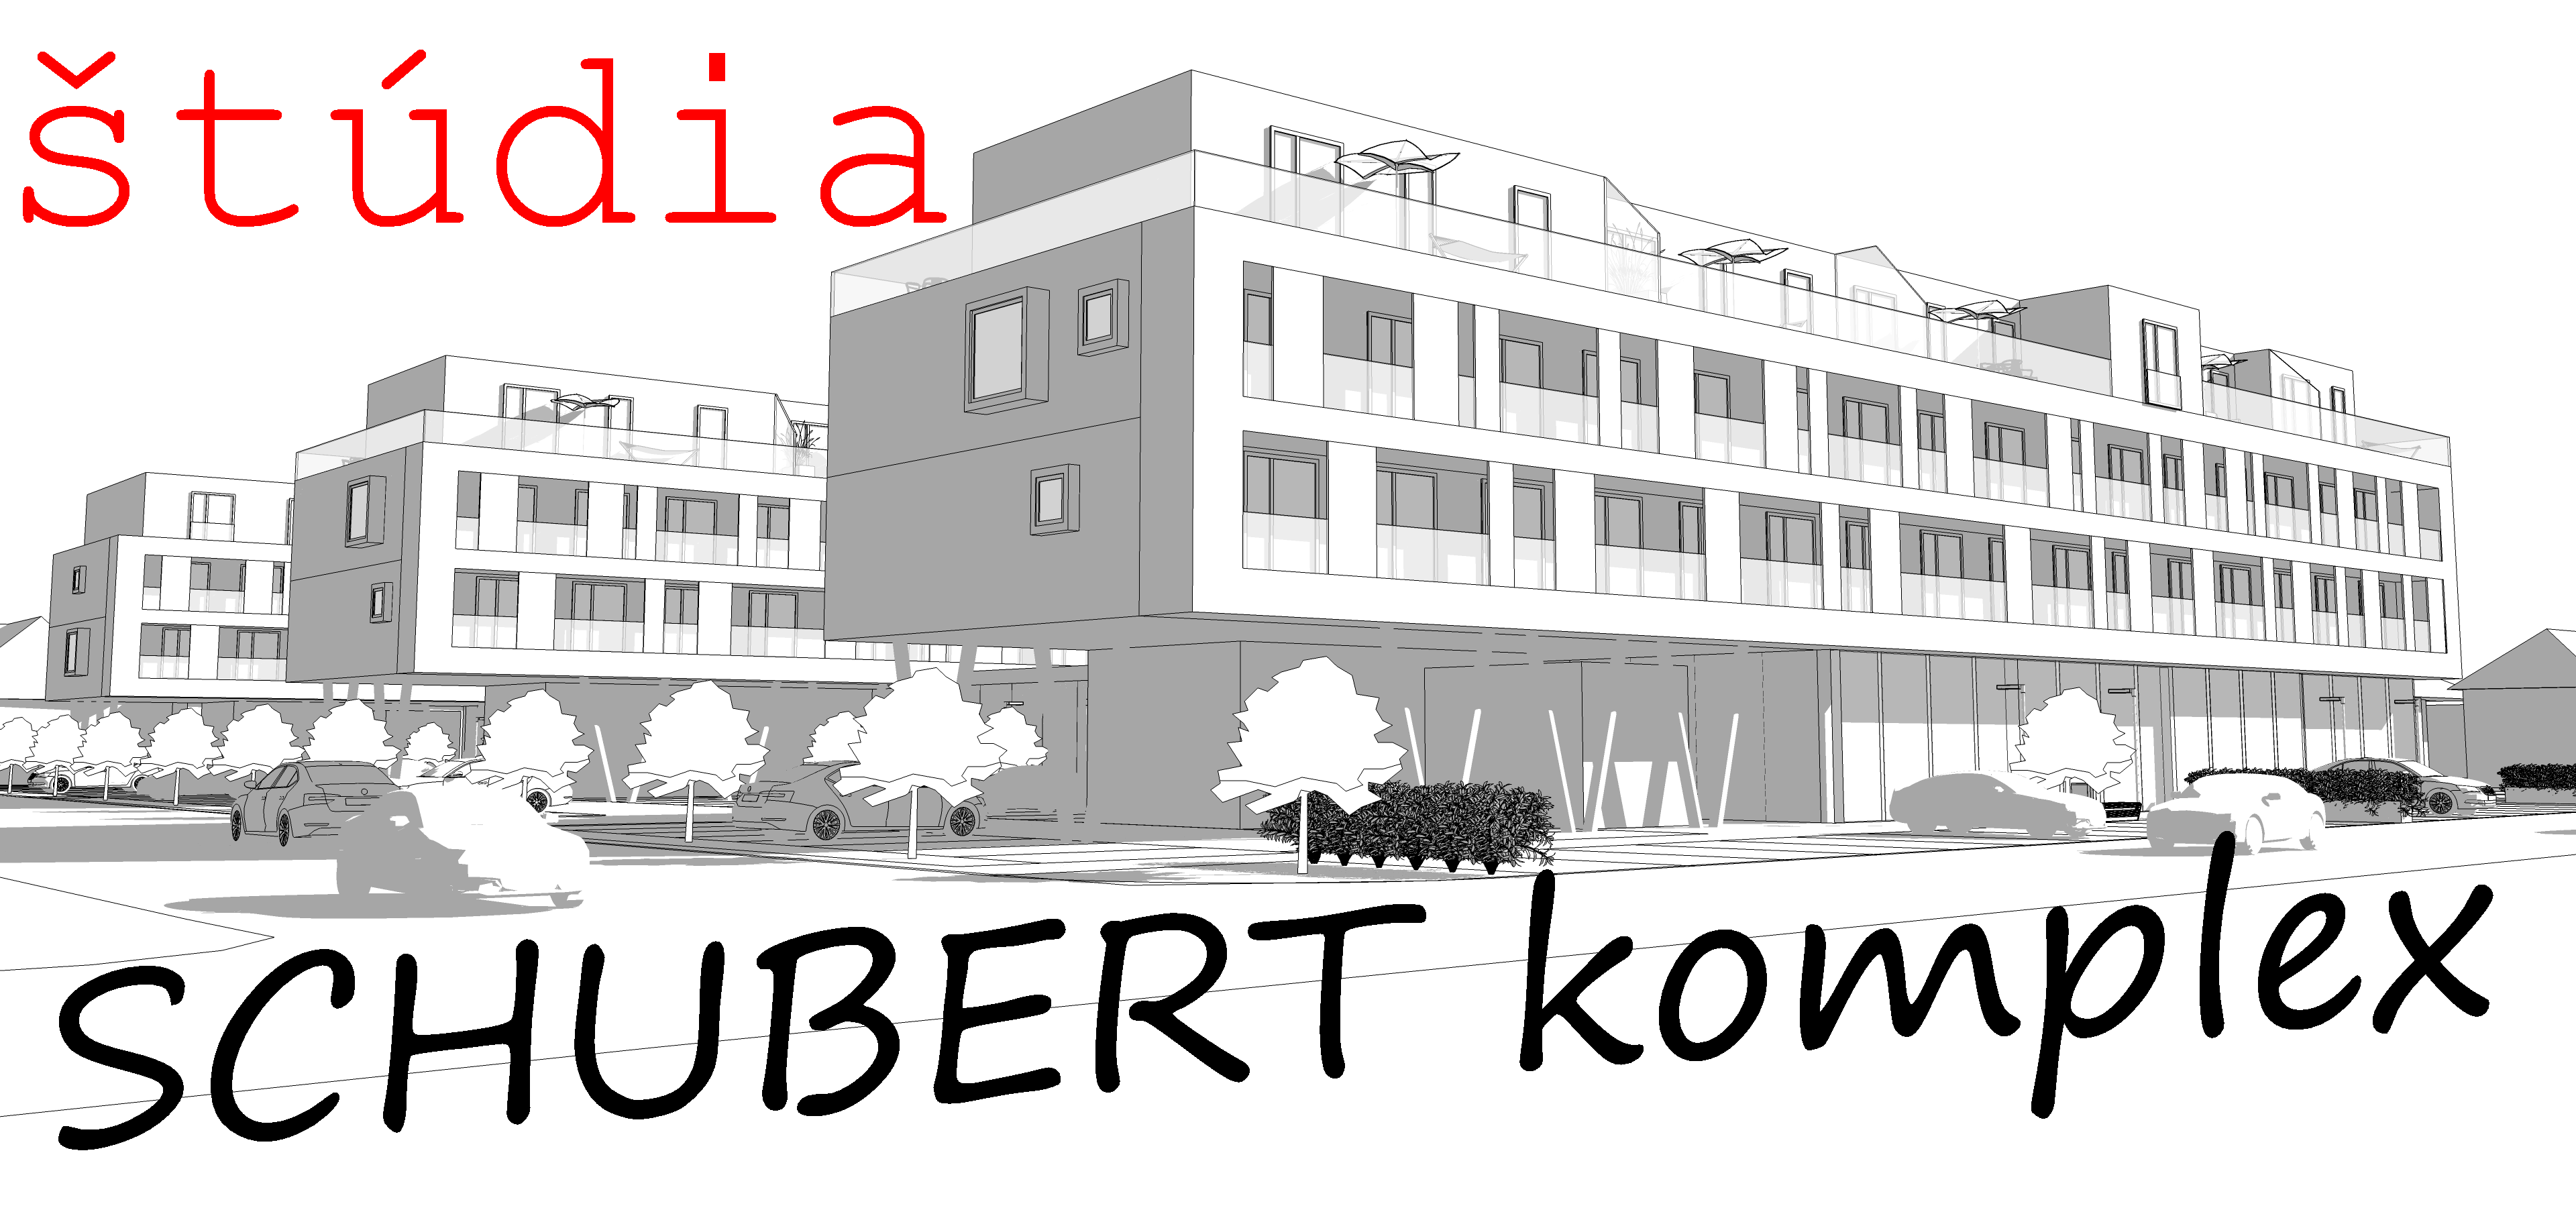 Schubert Komplex